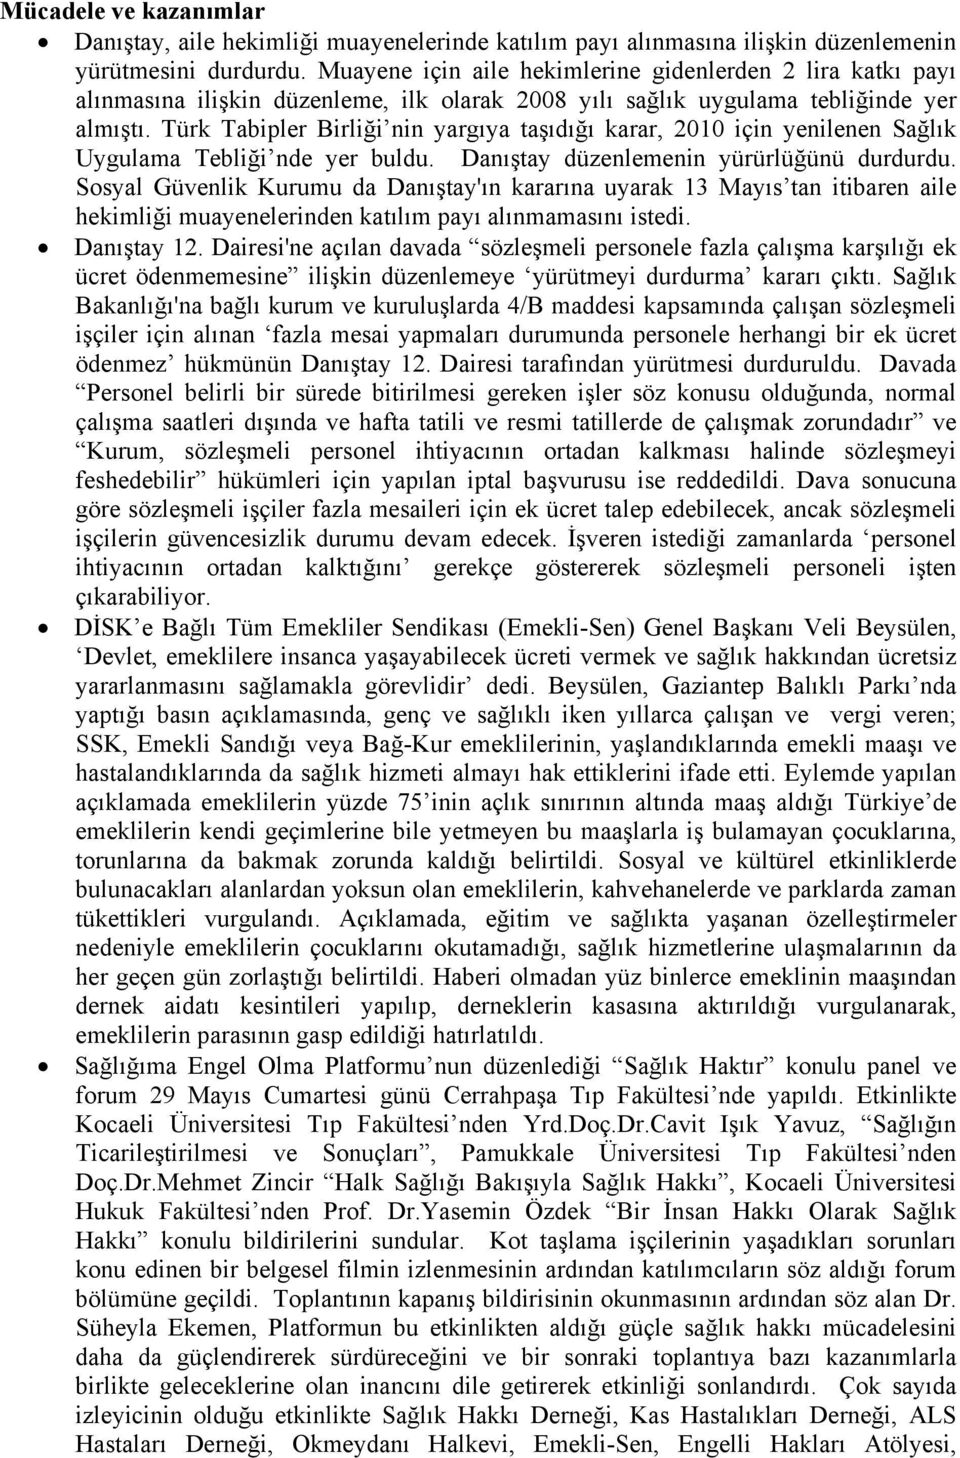 Türk Tabipler Birliği nin yargıya taşıdığı karar, 2010 için yenilenen Sağlık Uygulama Tebliği nde yer buldu. Danıştay düzenlemenin yürürlüğünü durdurdu.